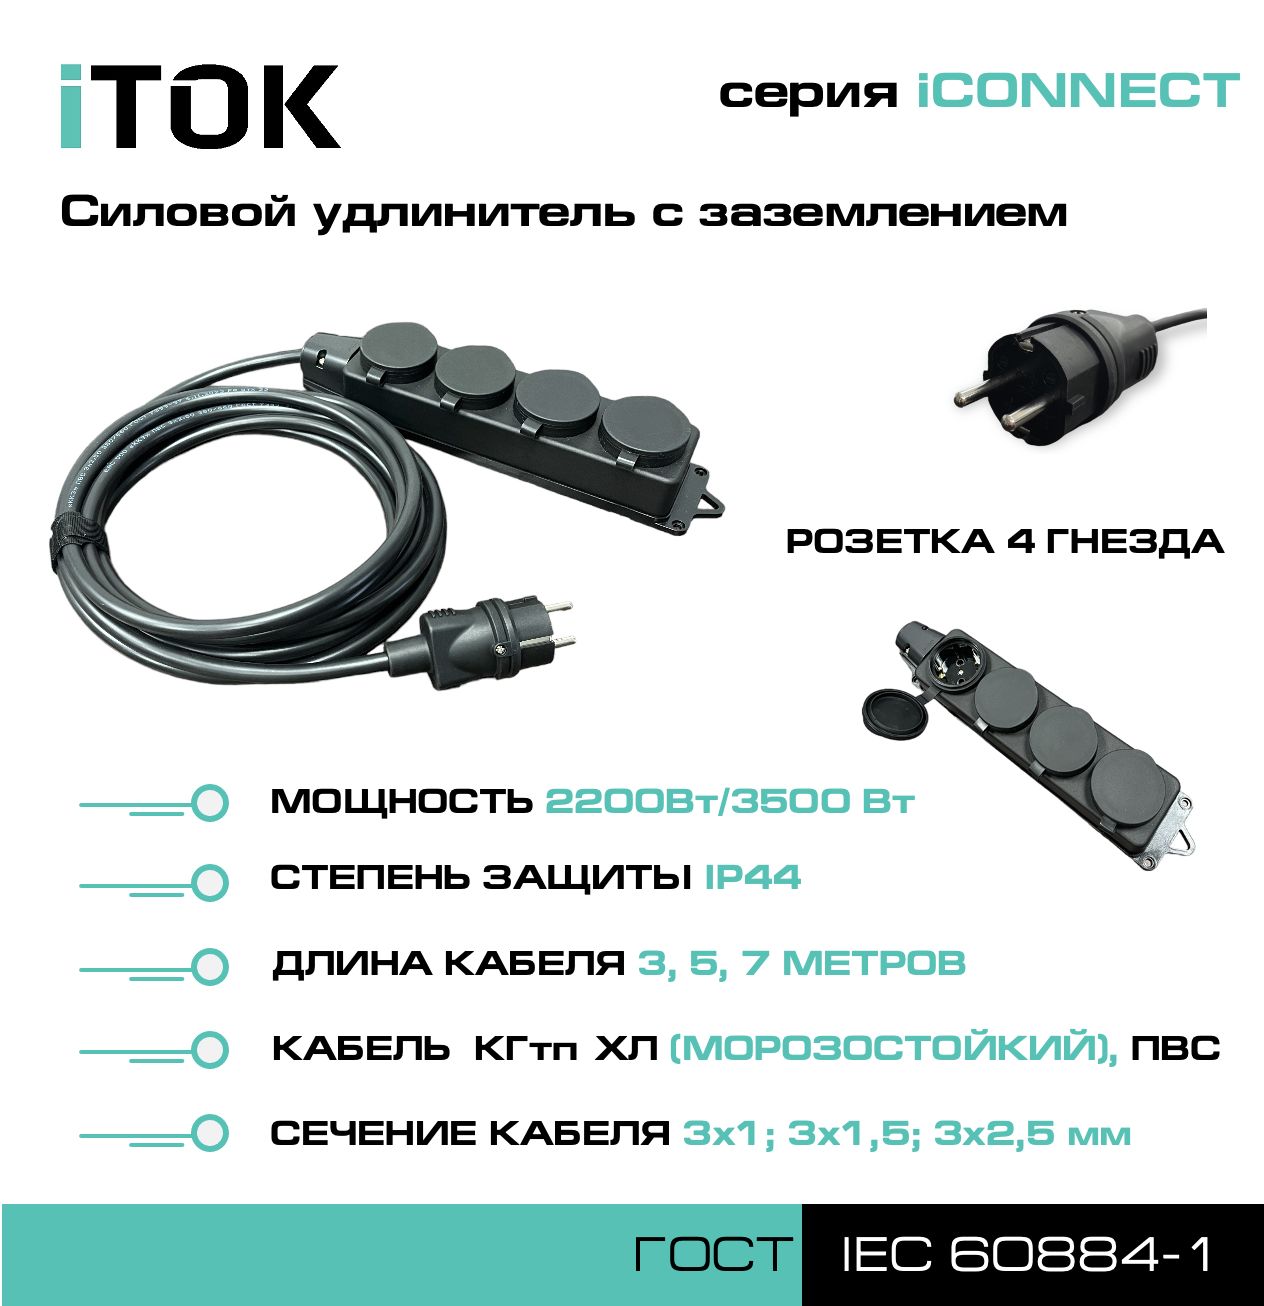 Удлинитель с заземлением серии iTOK iCONNECT КГтп-ХЛ 3х1,5 мм 4 гнезда IP44 7 м